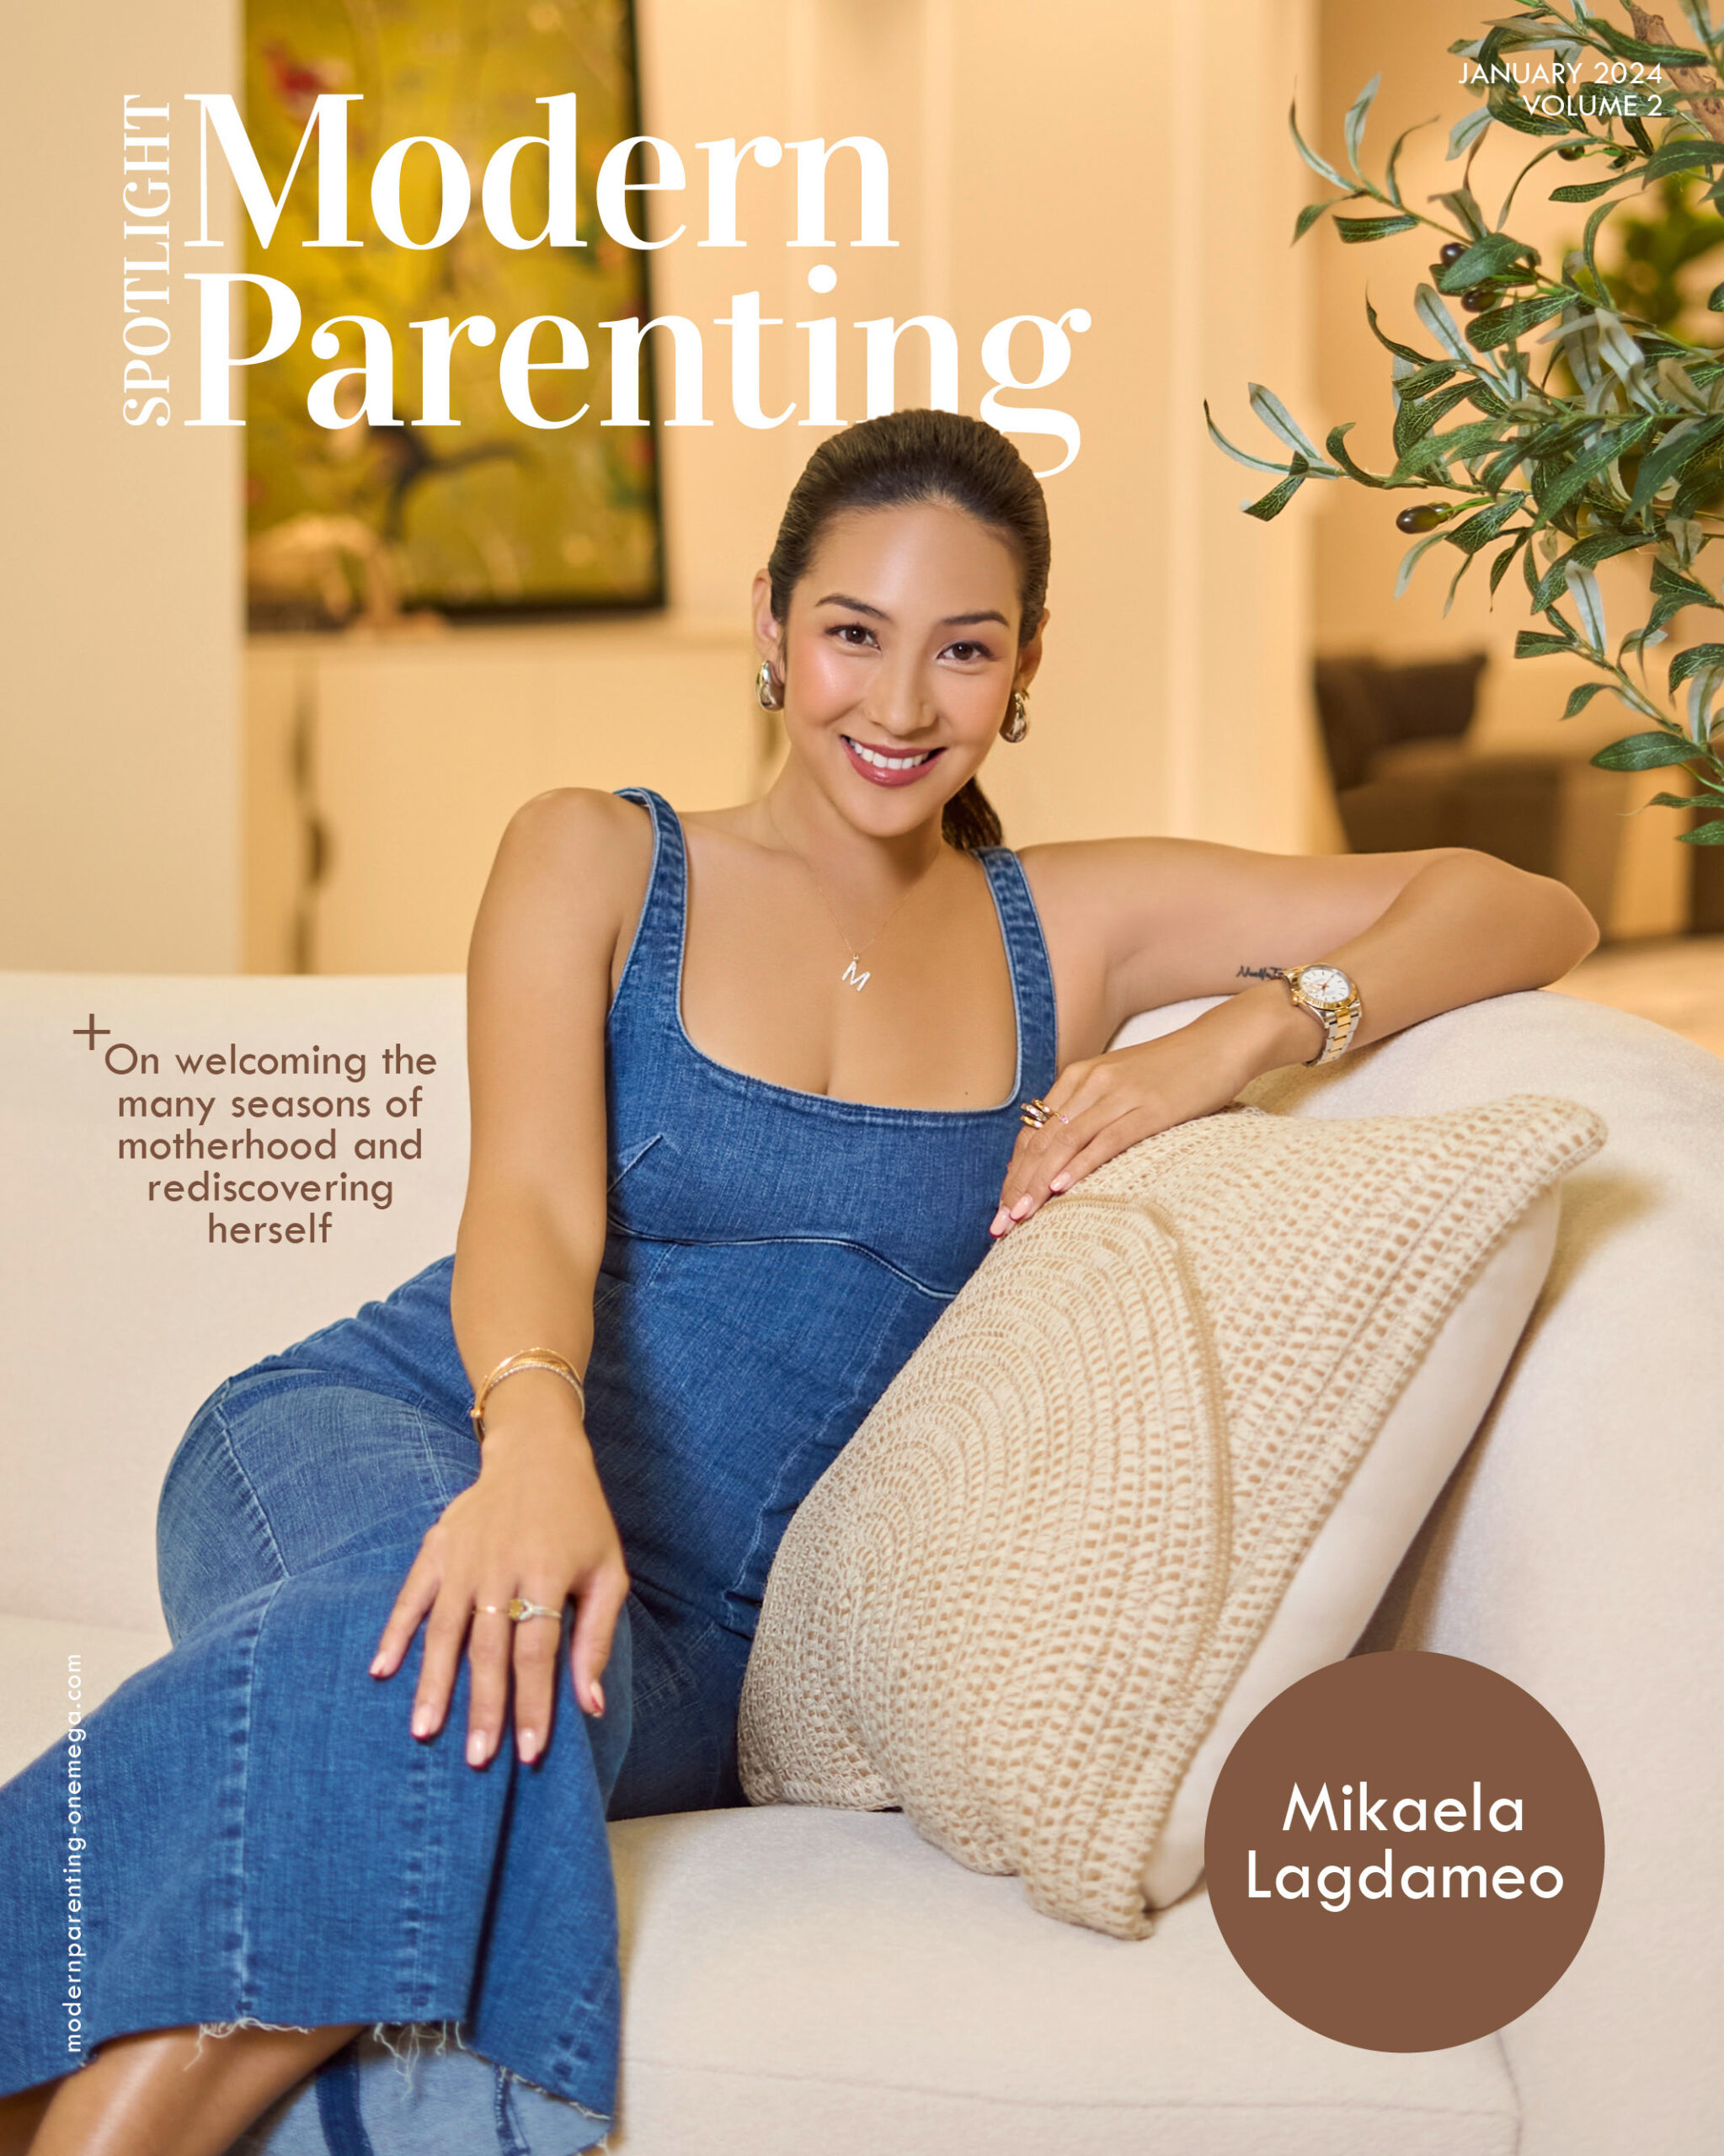 Mika Lagdameo on embracing motherhood with Modern Parenting